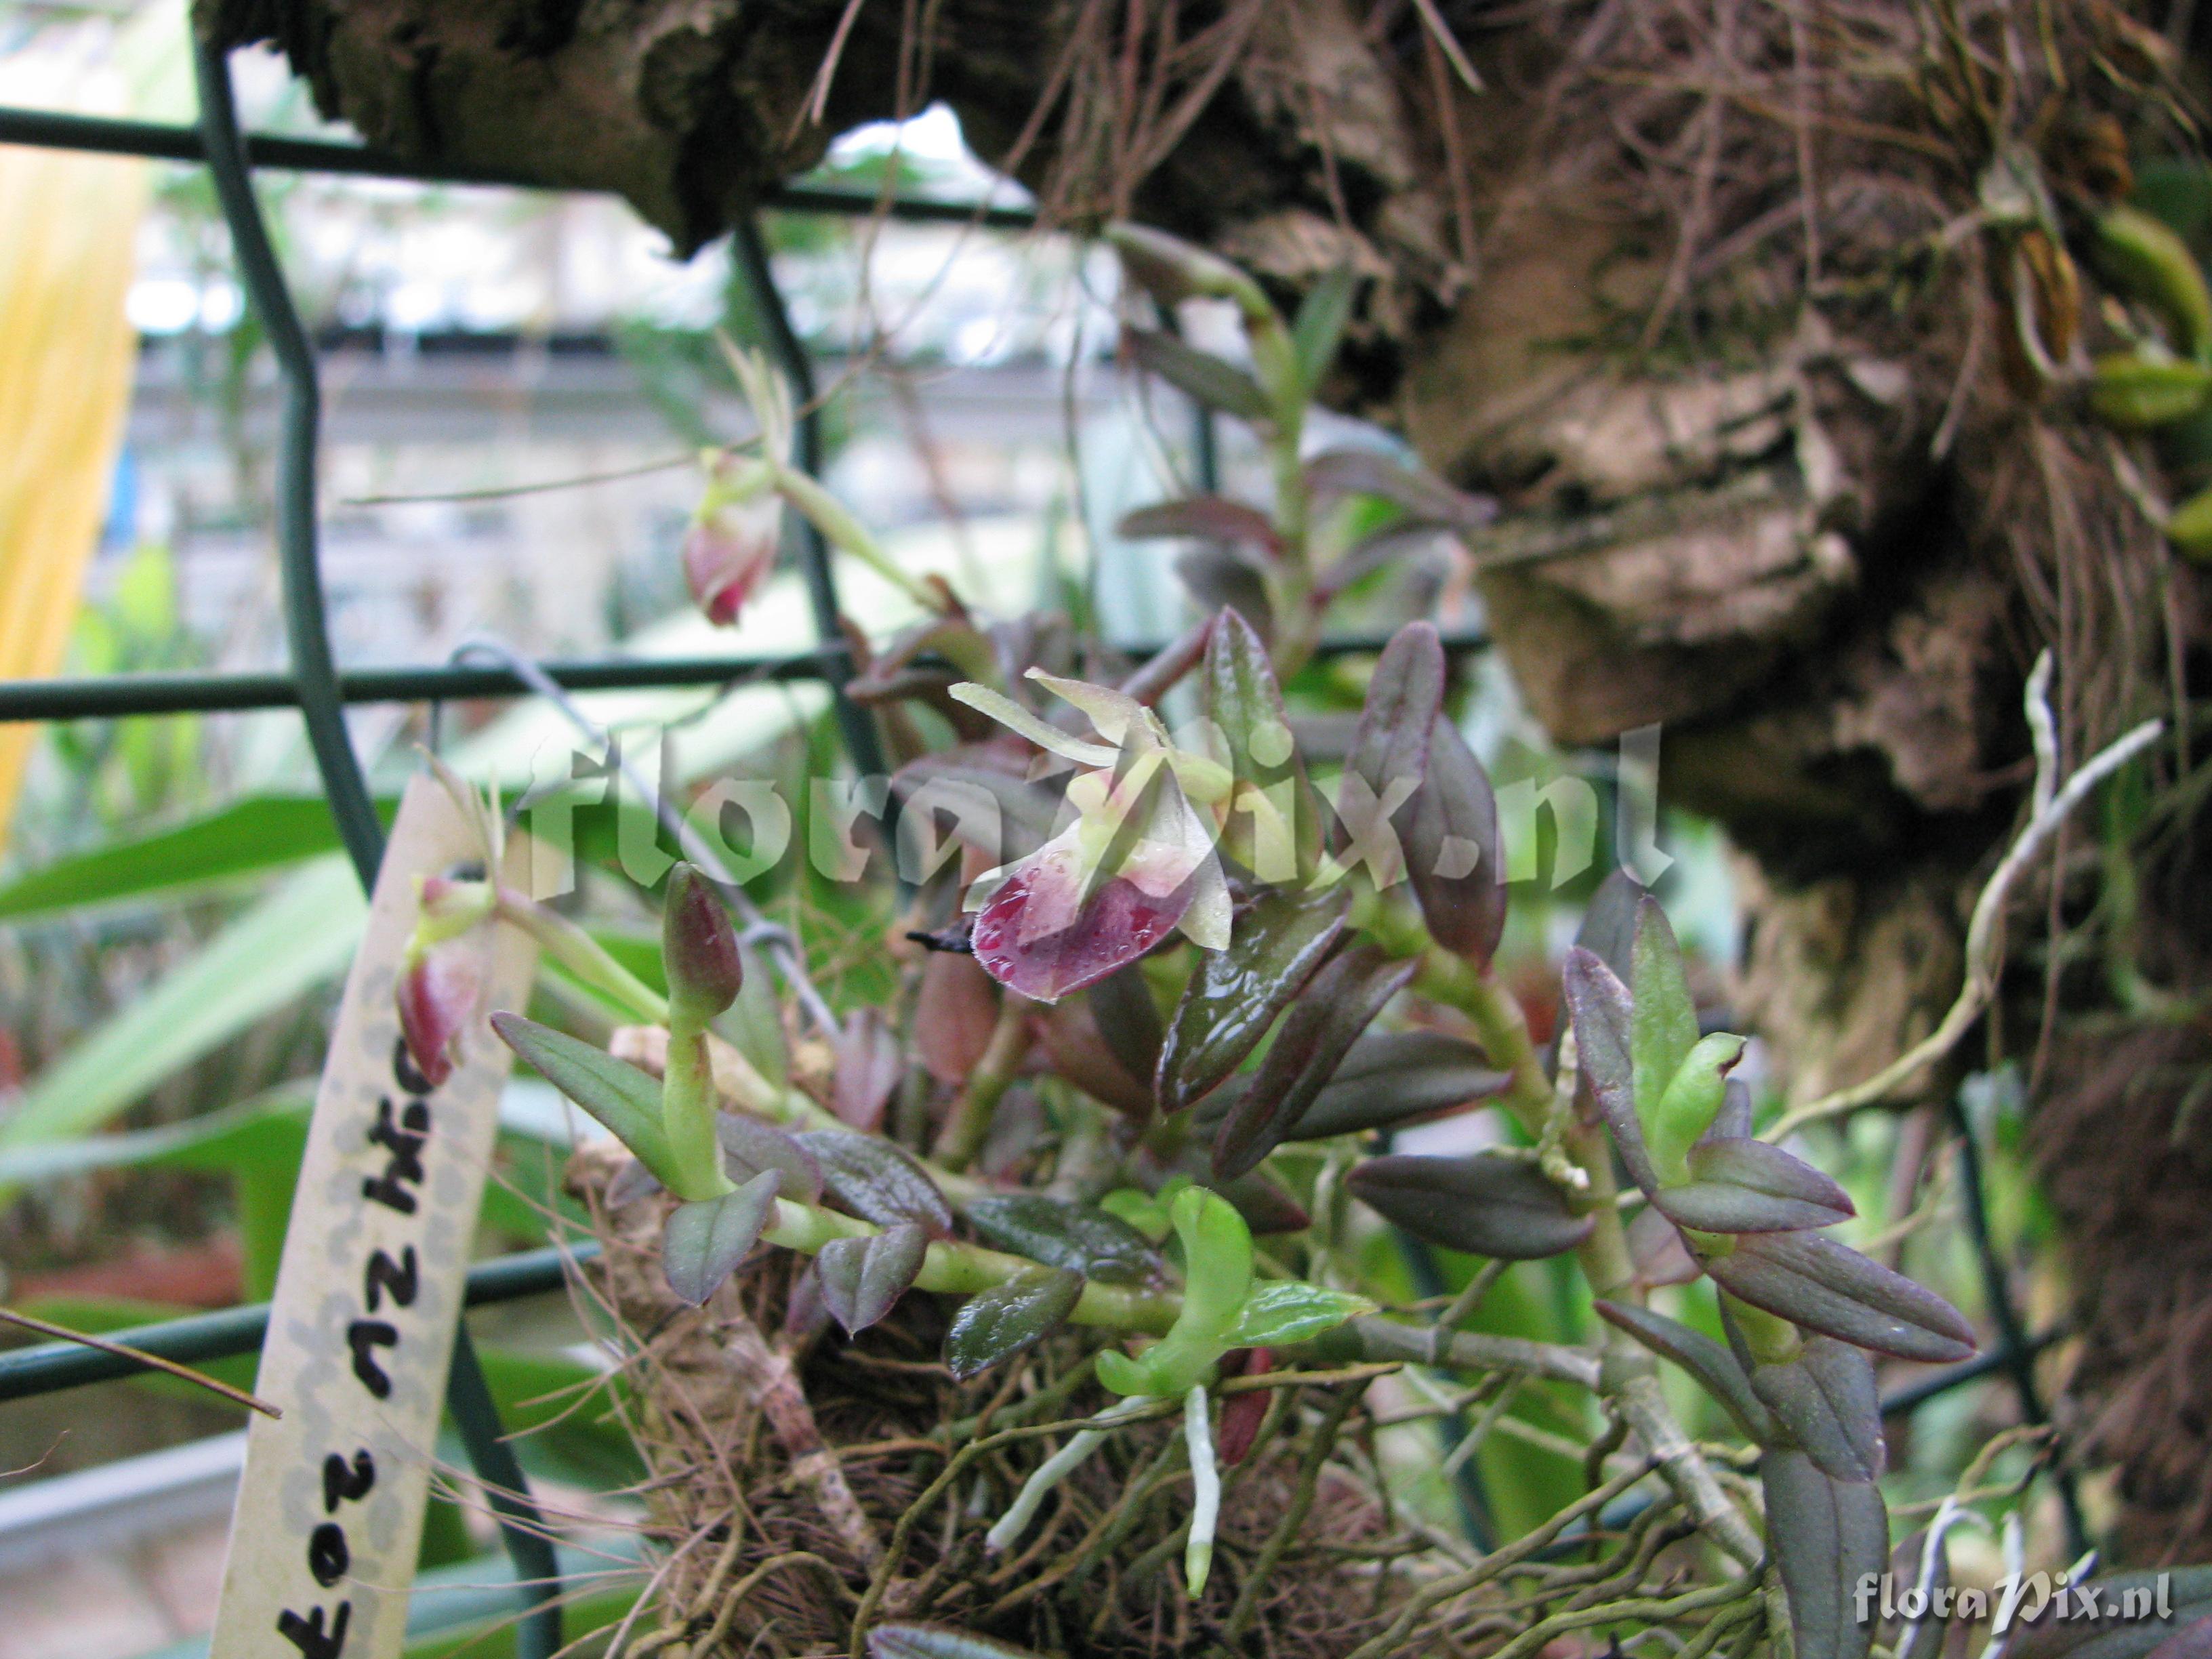 Epidendrum siphonosepalum